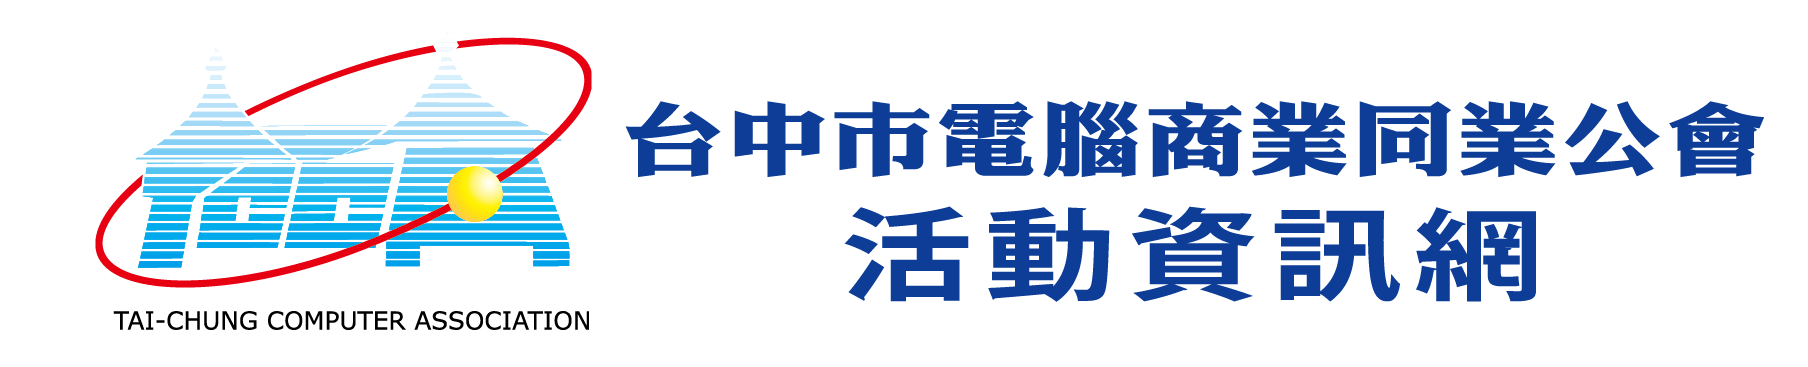  台中市電腦公會活動資訊網